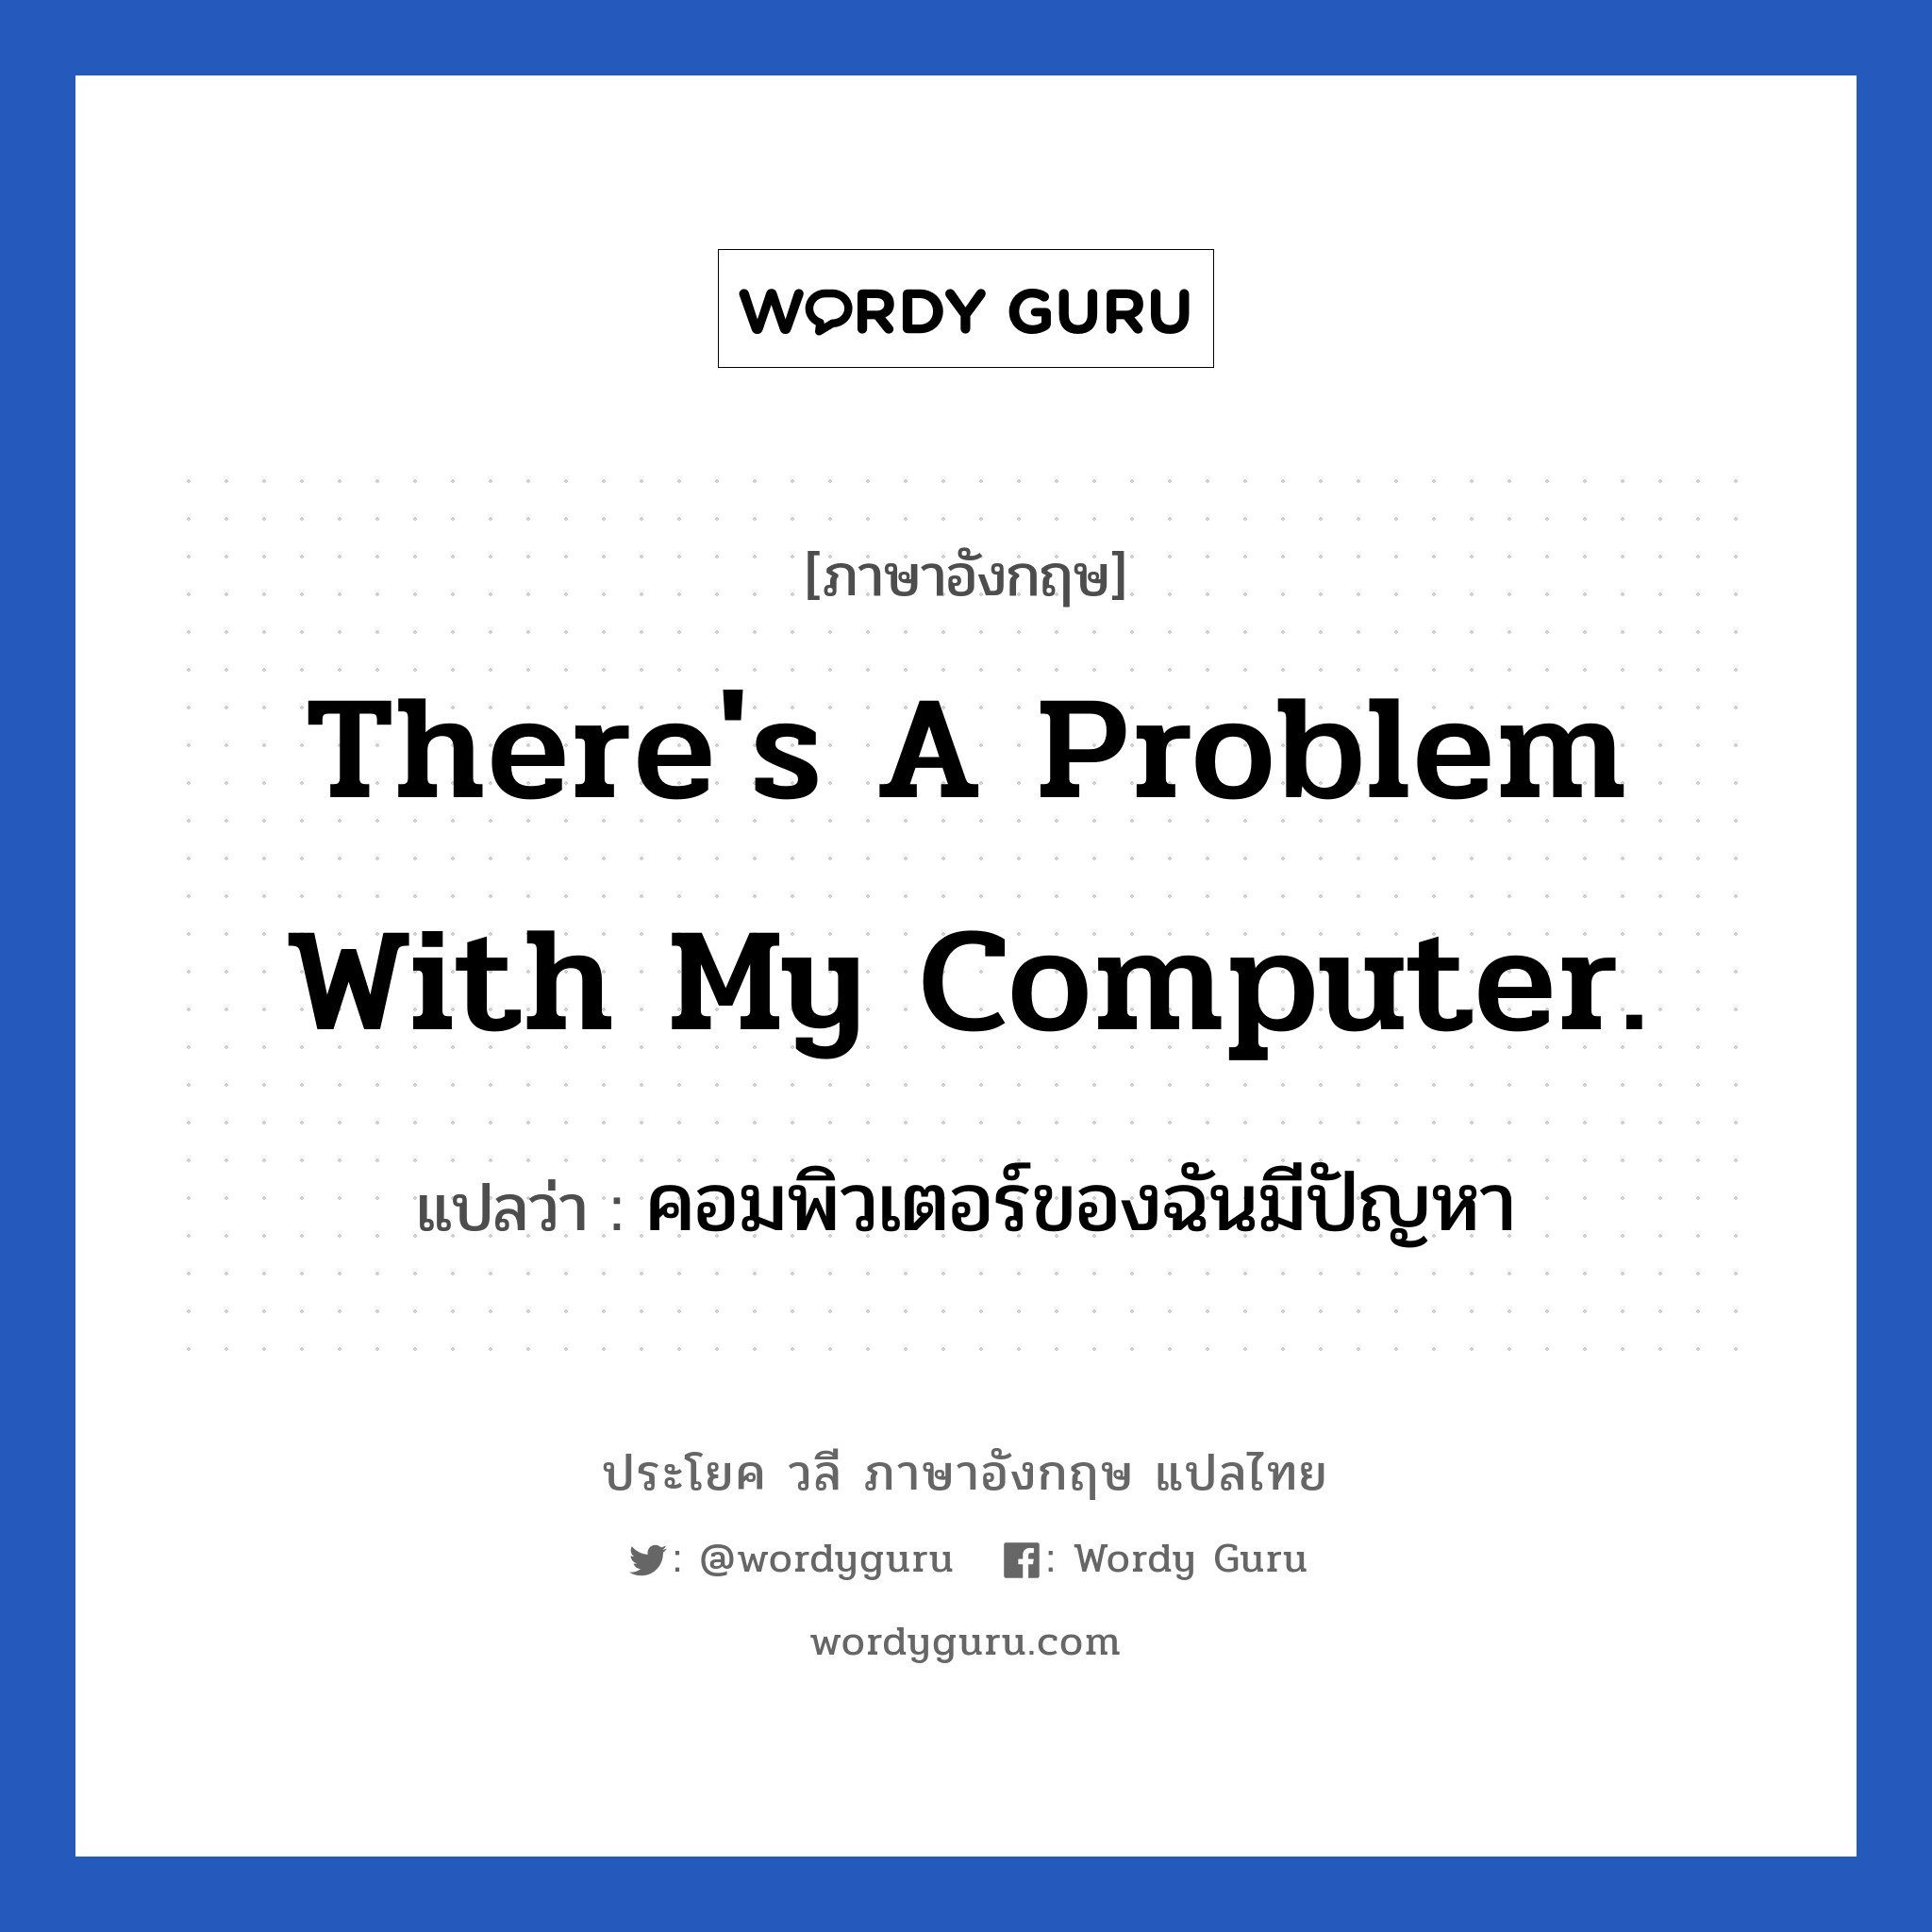 คอมพิวเตอร์ของฉันมีปัญหา ภาษาอังกฤษ?, วลีภาษาอังกฤษ คอมพิวเตอร์ของฉันมีปัญหา แปลว่า There's a problem with my computer.